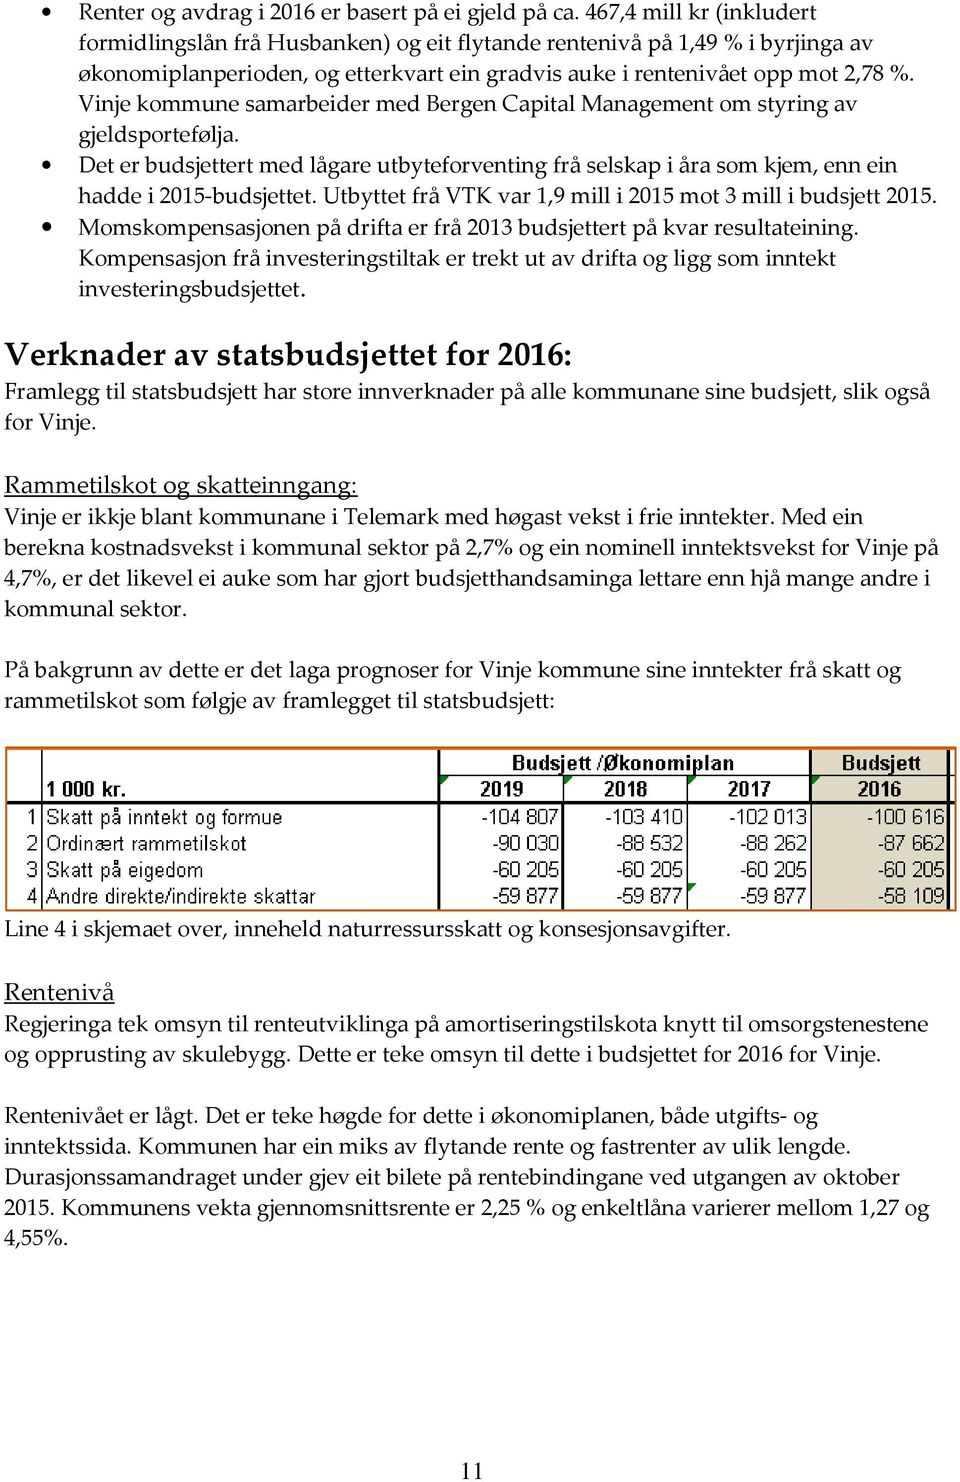 Vinje kommune samarbeider med Bergen Capital Management om styring av gjeldsportefølja. Det er budsjettert med lågare utbyteforventing frå selskap i åra som kjem, enn ein hadde i 2015-budsjettet.